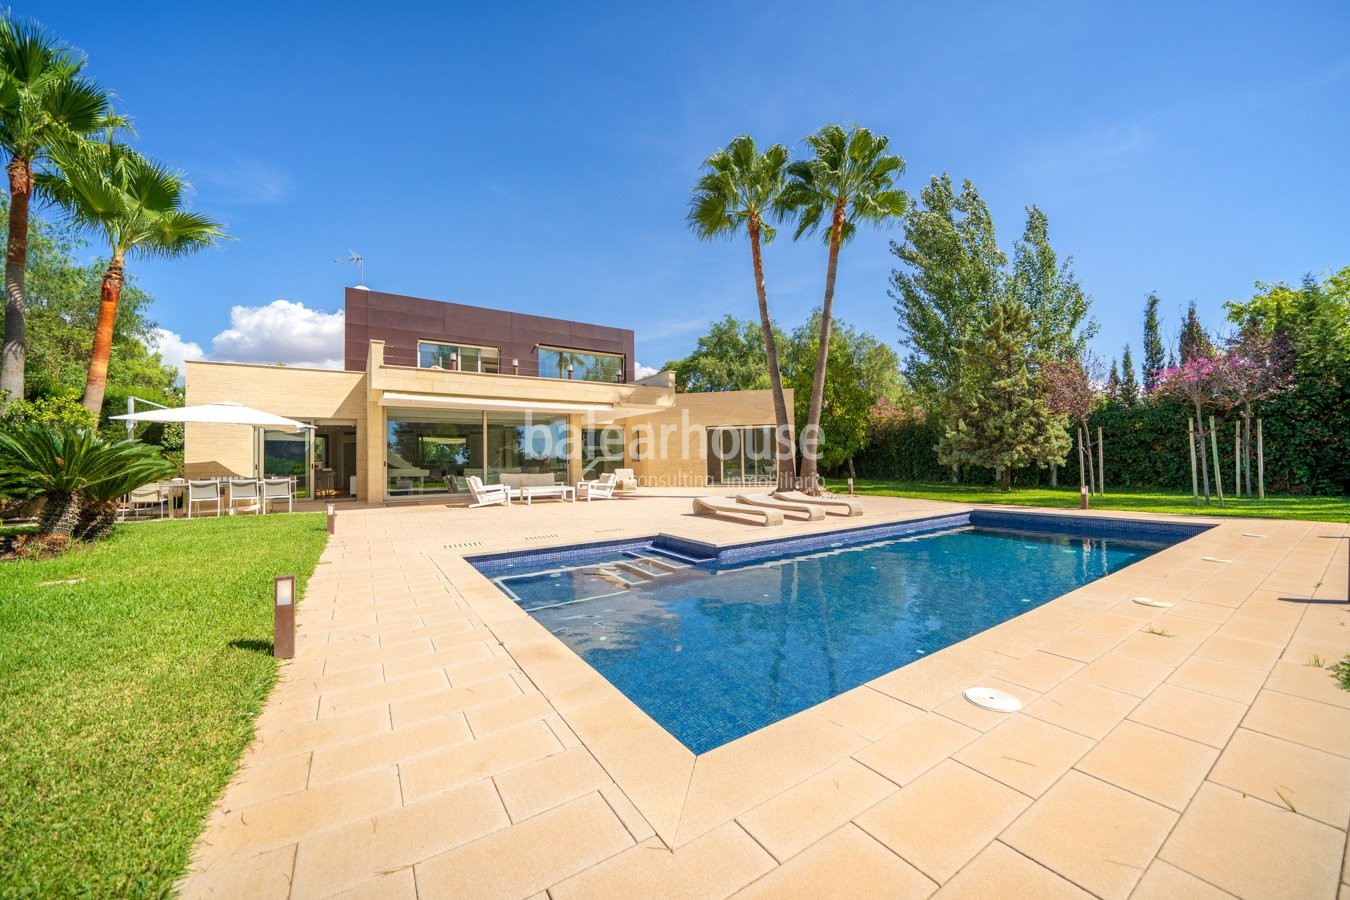 Moderno chalet de amplios espacios llenos de luz, con gran jardín y piscina muy cerca de Palma.